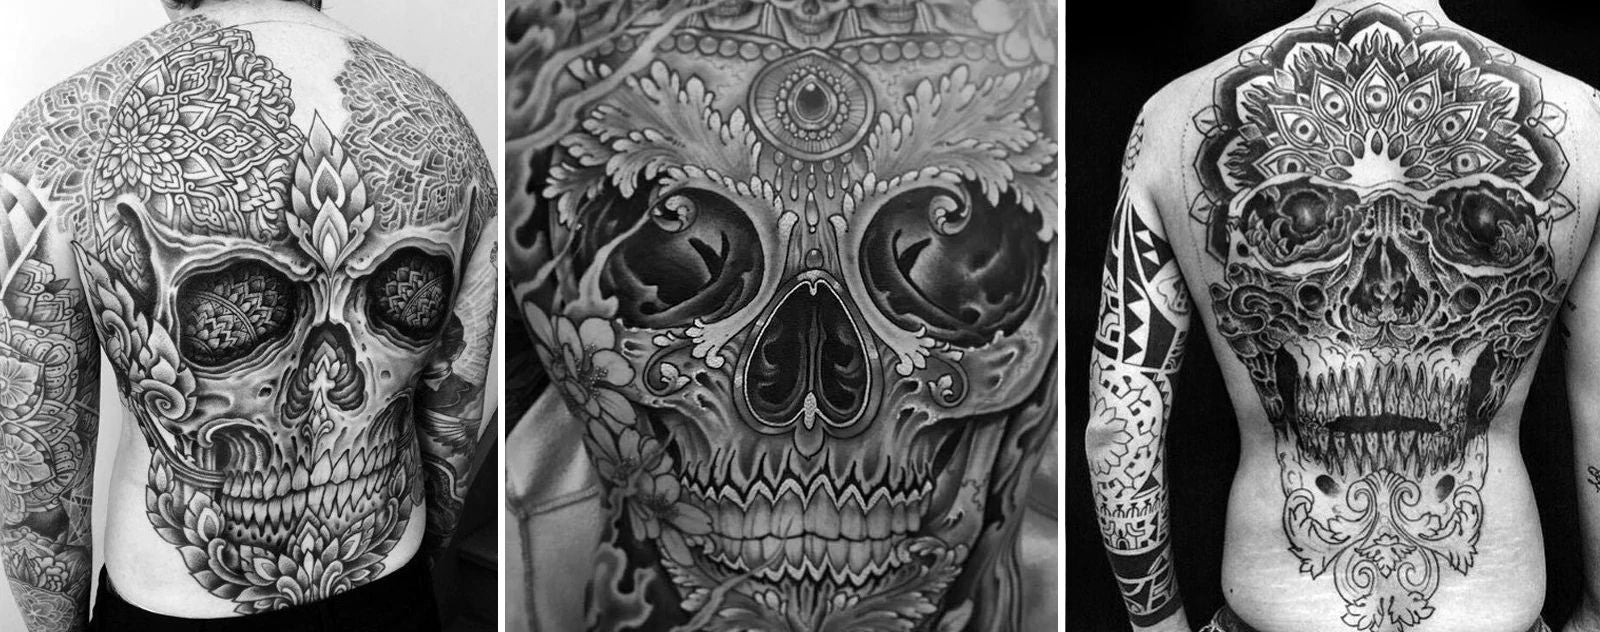 Mexican Skull tattoos